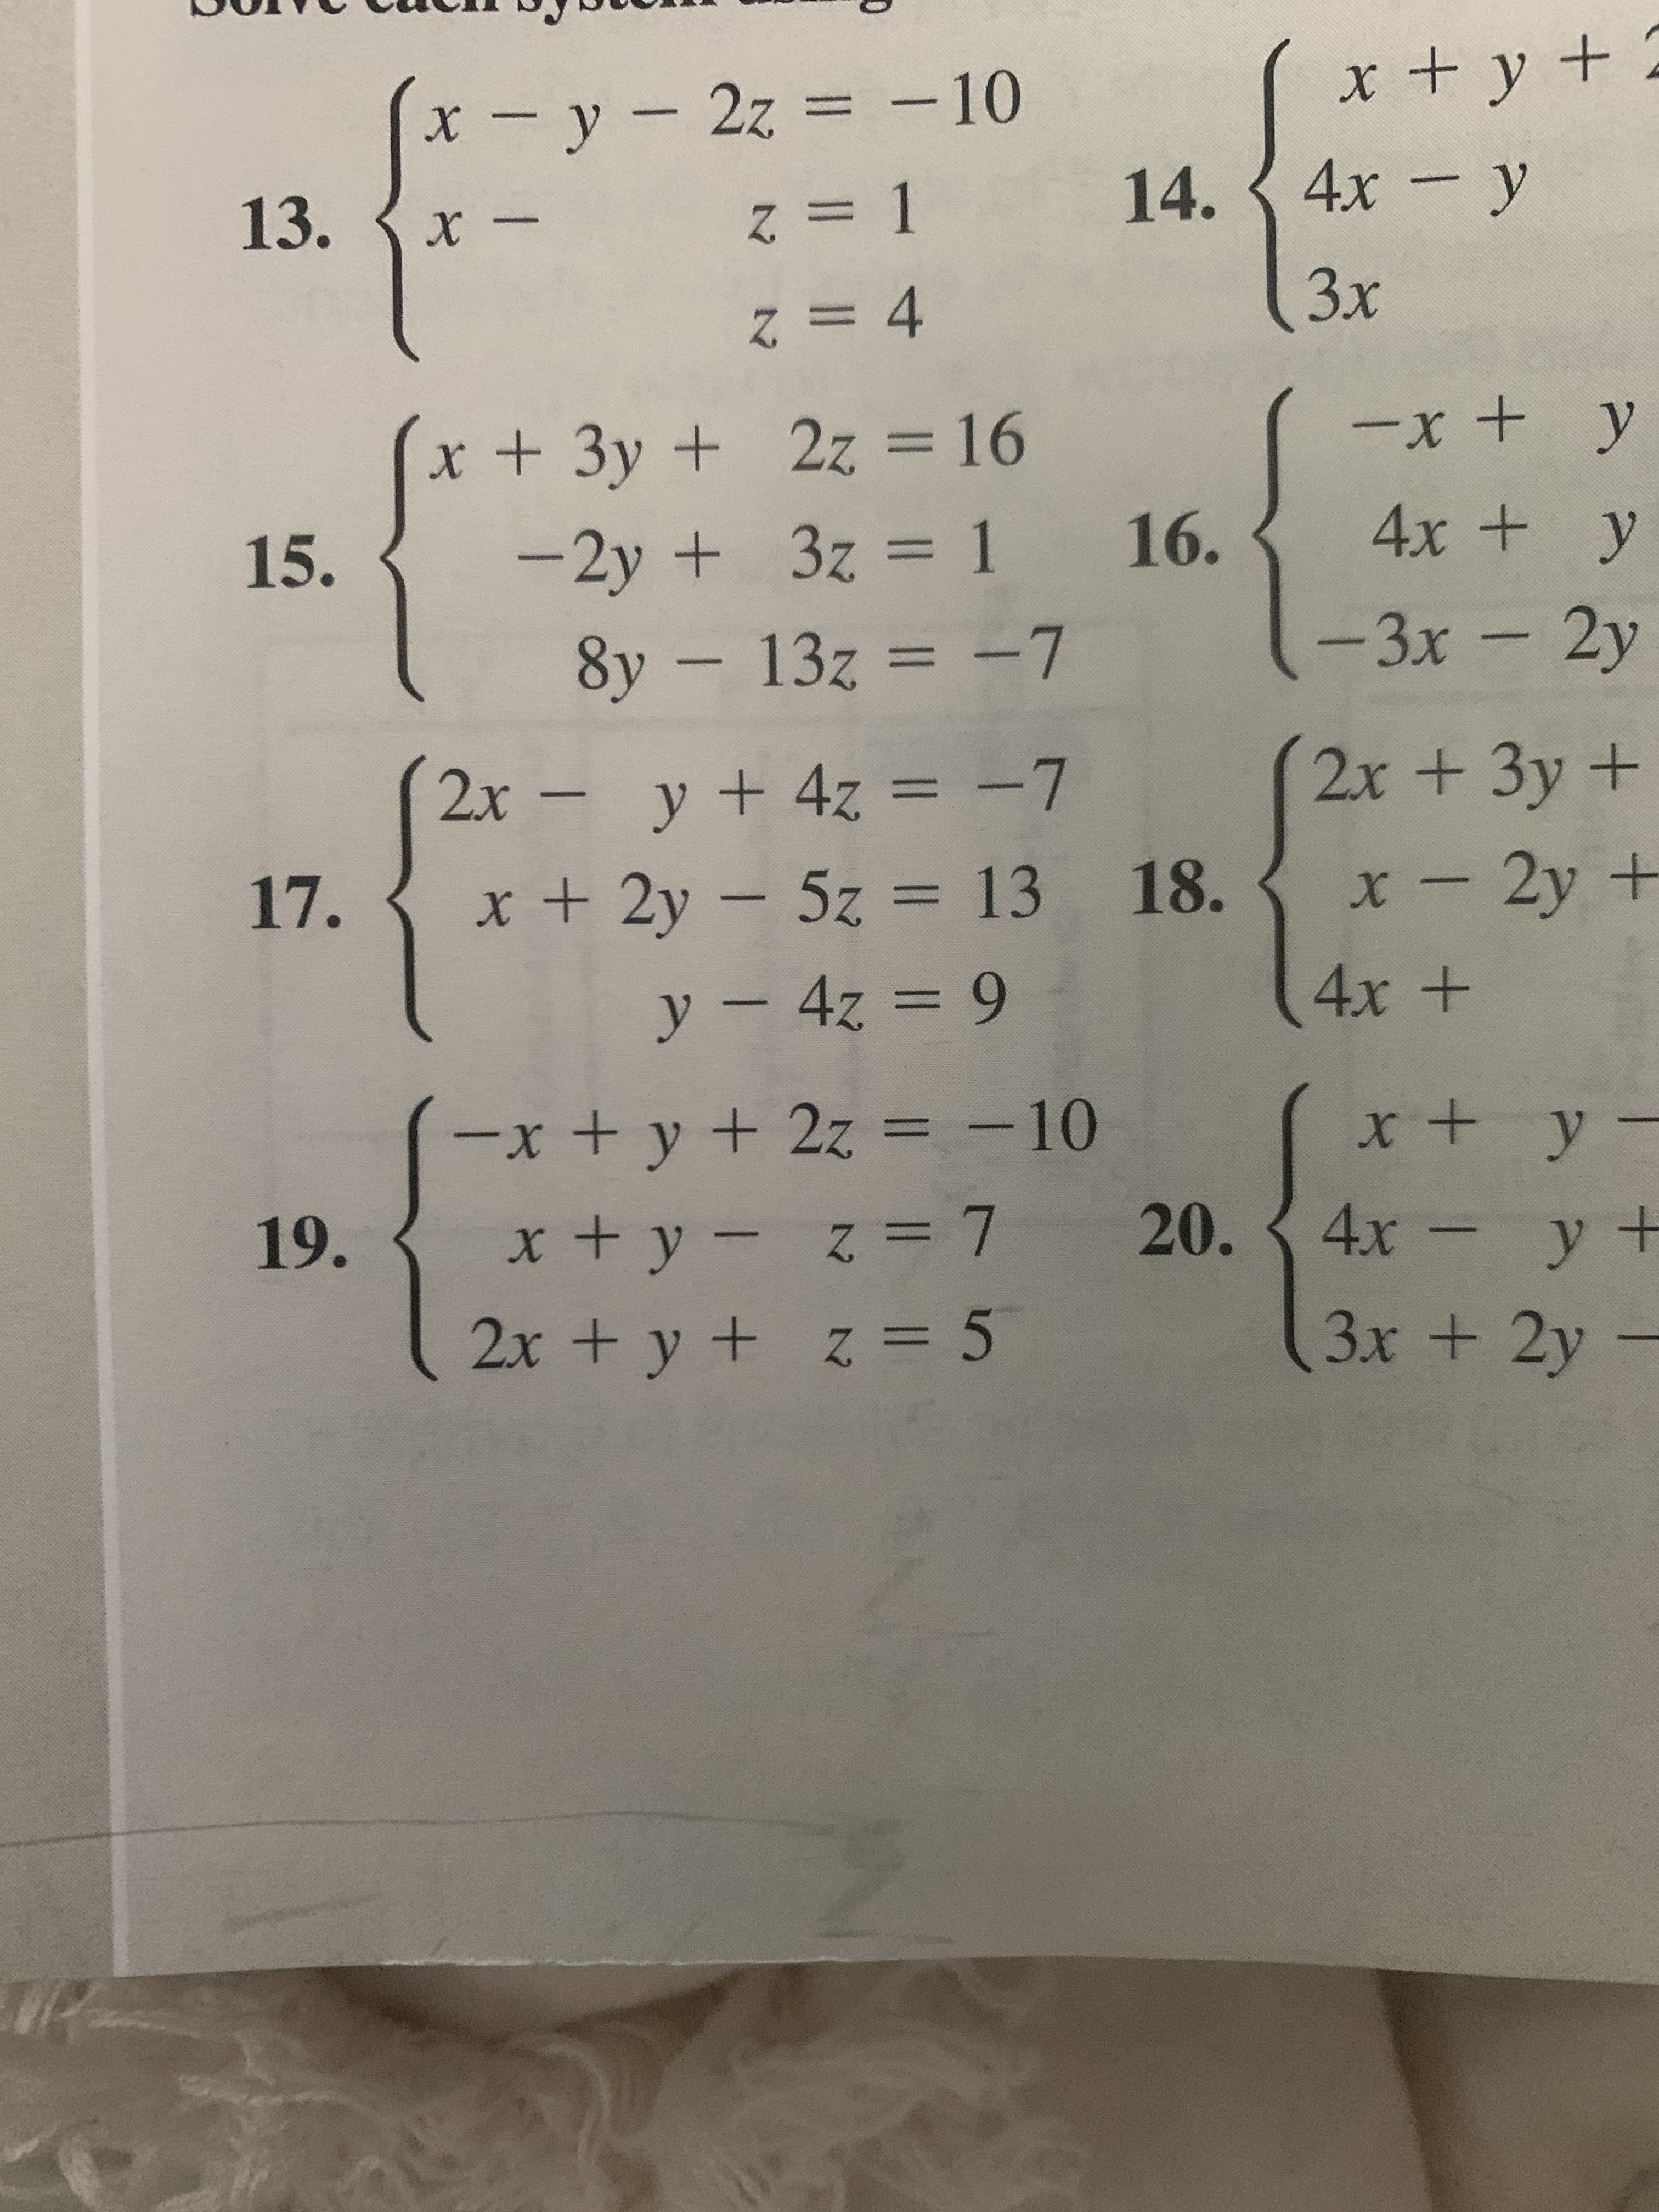 x - y- 2z - 10
x +y + 2
%3D
13.
=D 1
14. {4x - y
%%3D4
Зх
x+3y + 2z = 16
+x-
%3D
-2y + 3z = 1 16.
8y – 13z = -7
15.
4x + y
%3D
-3x-2y
2x y+ 4z = -7
2x + 3y+
%3D
17.
x+ 2y- 5z = 13 18.
5z%3D13
x-2y +
y-4z = 9
4х +
-x+y +2z = -10
x+y-
%3D
19.
x+y- z= 7 20. {
4x-y +
2x +y + z = 5
3x + 2y
